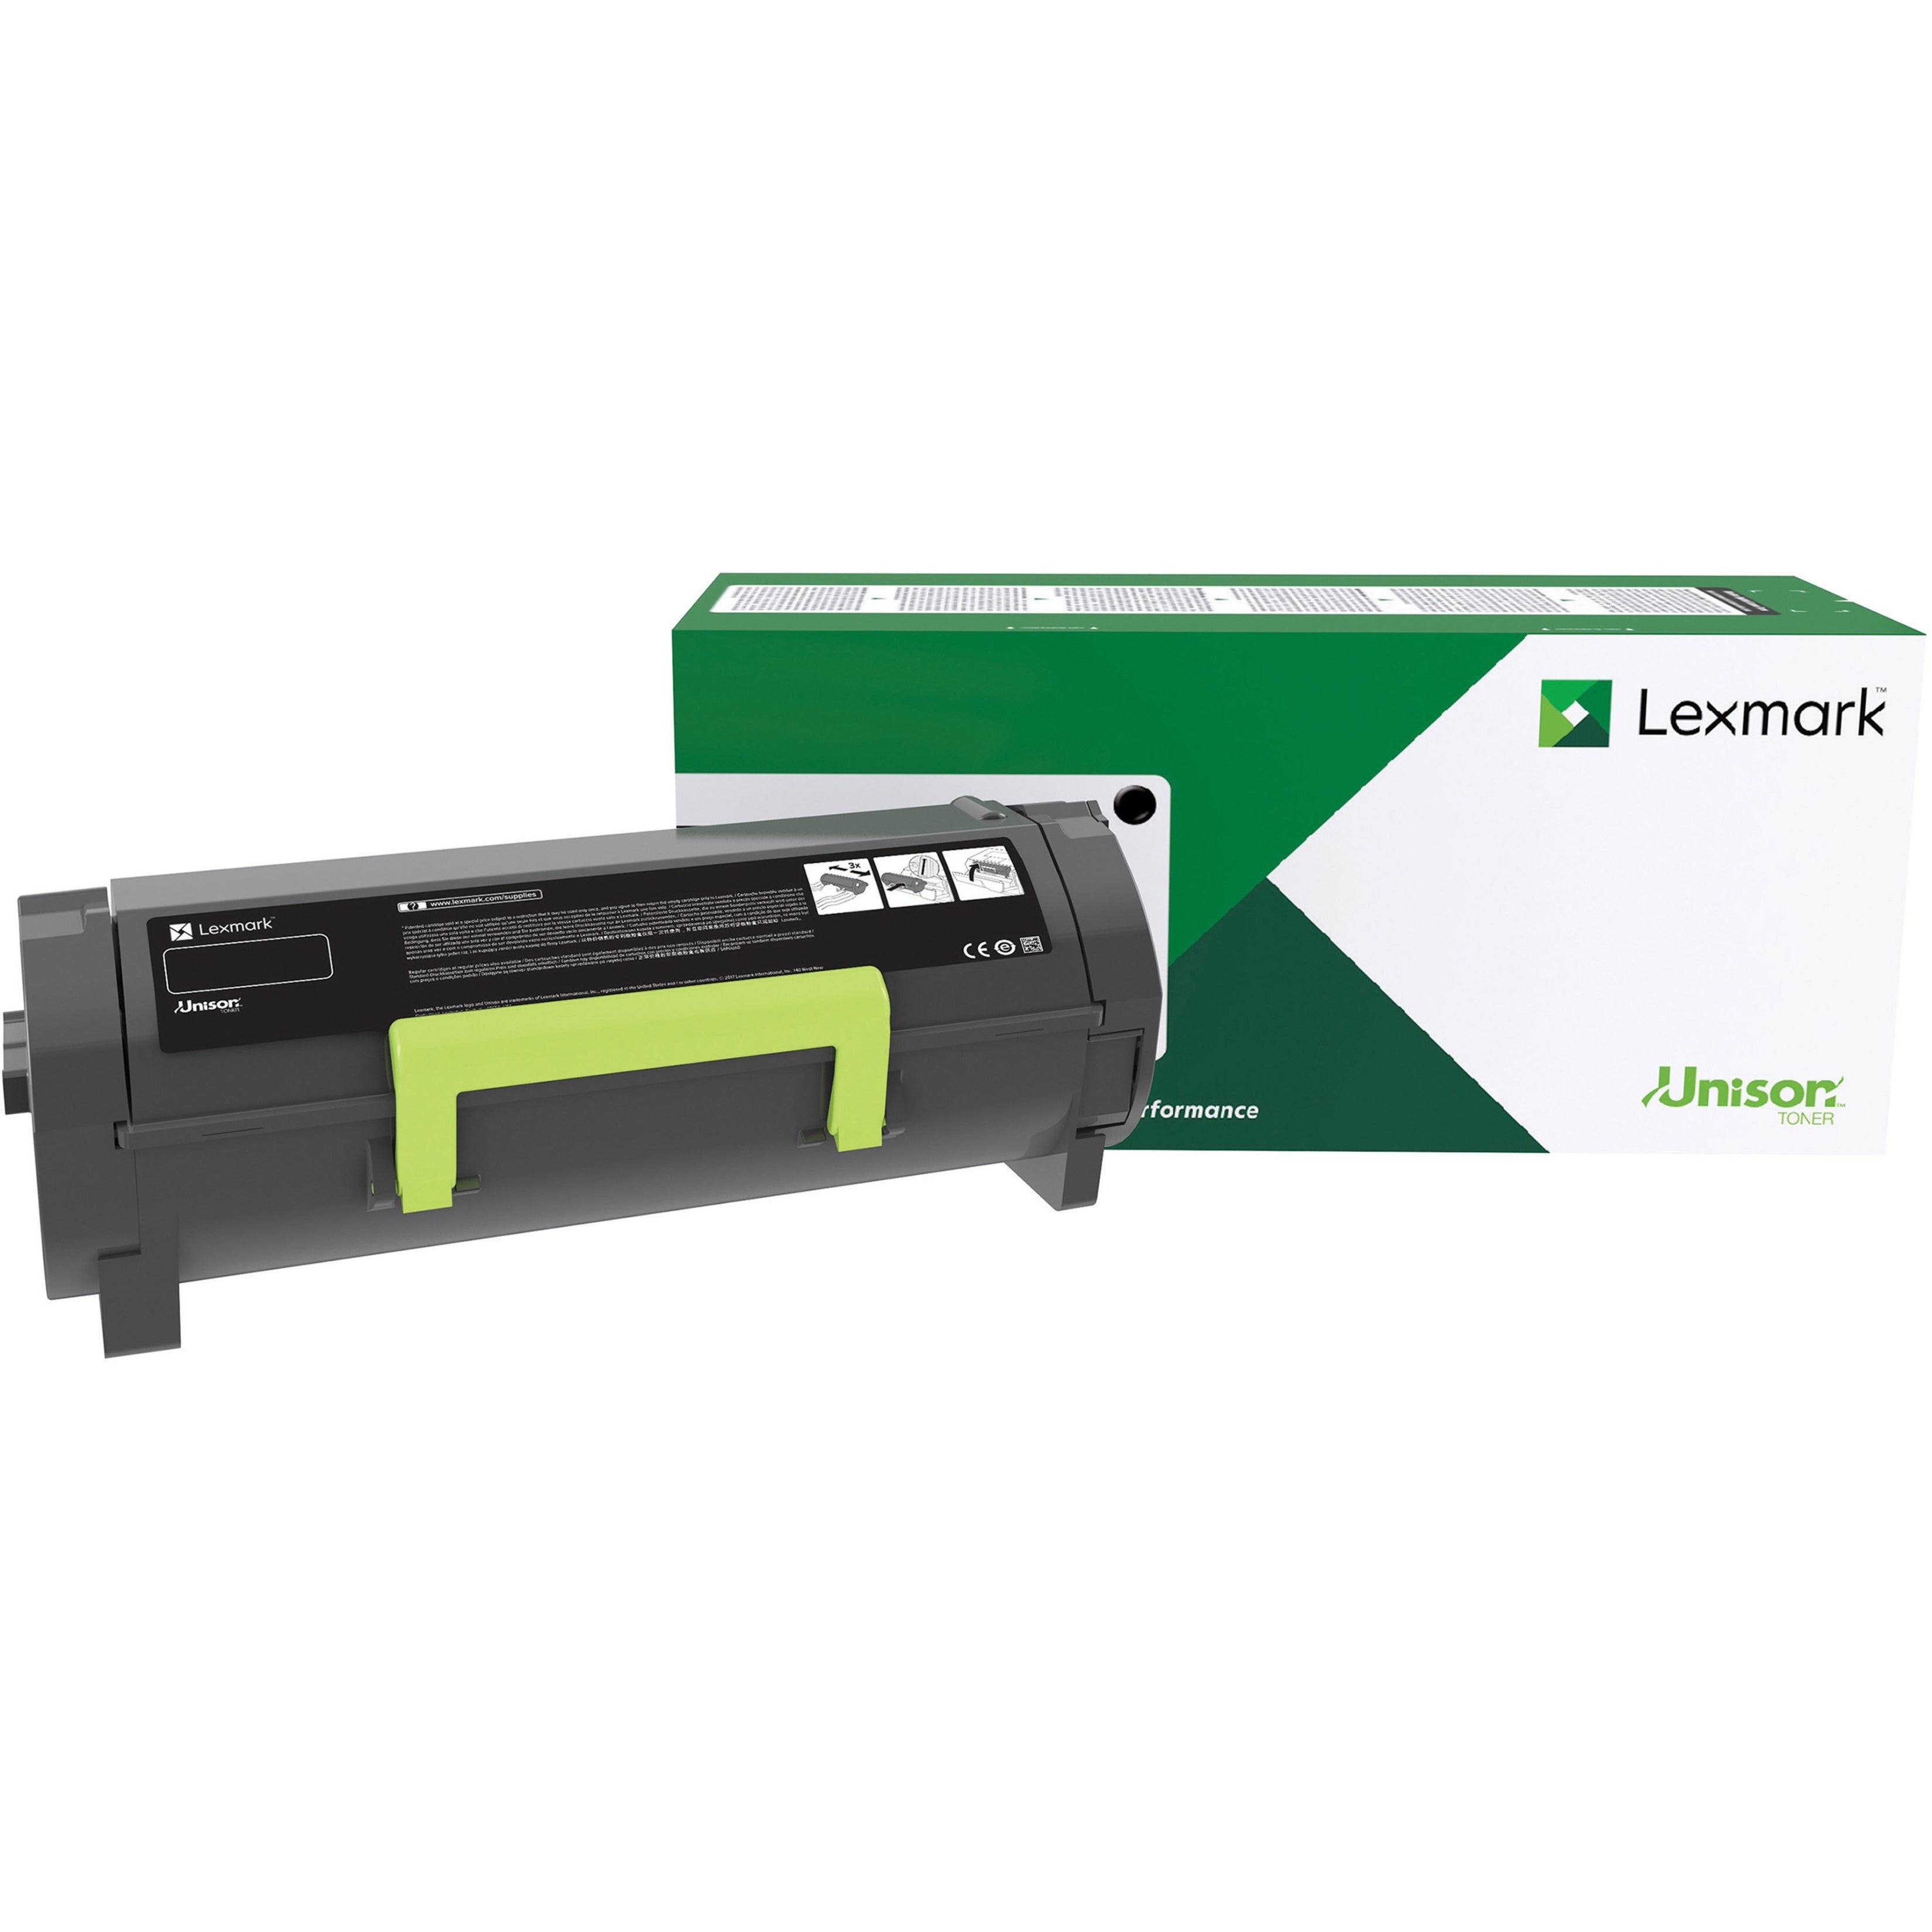 Lexmark 60F1000 Unison Toner Cartridge, 2500 Page Yield